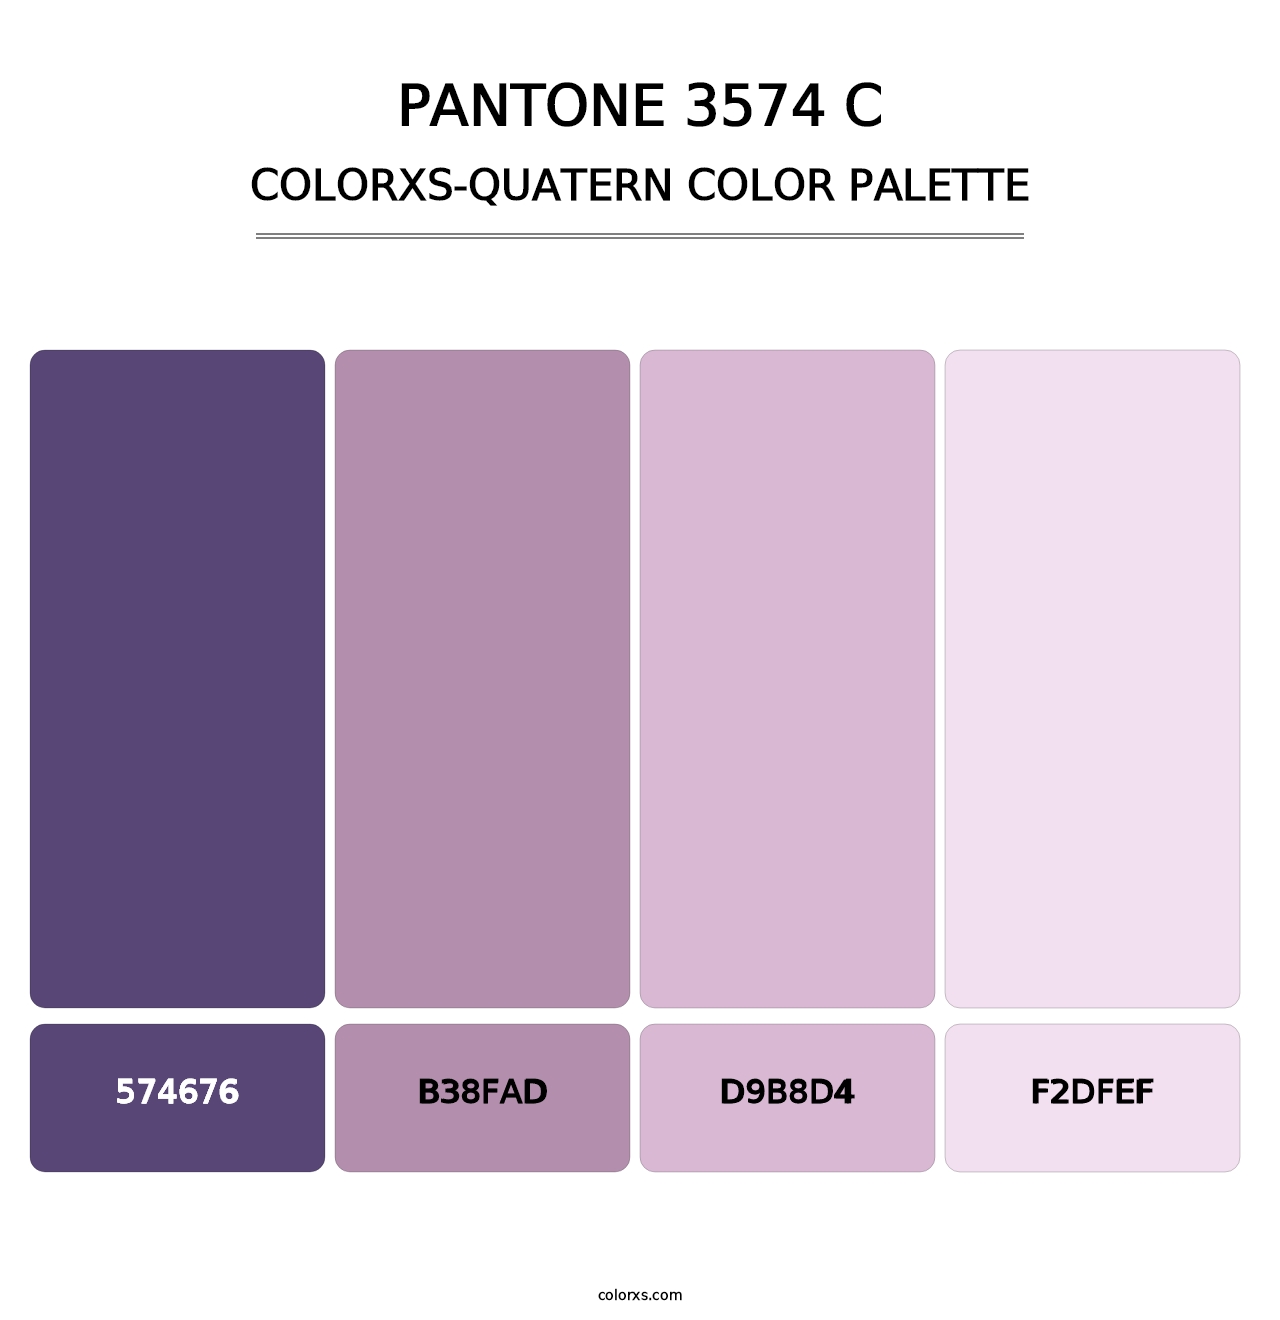 PANTONE 3574 C - Colorxs Quatern Palette